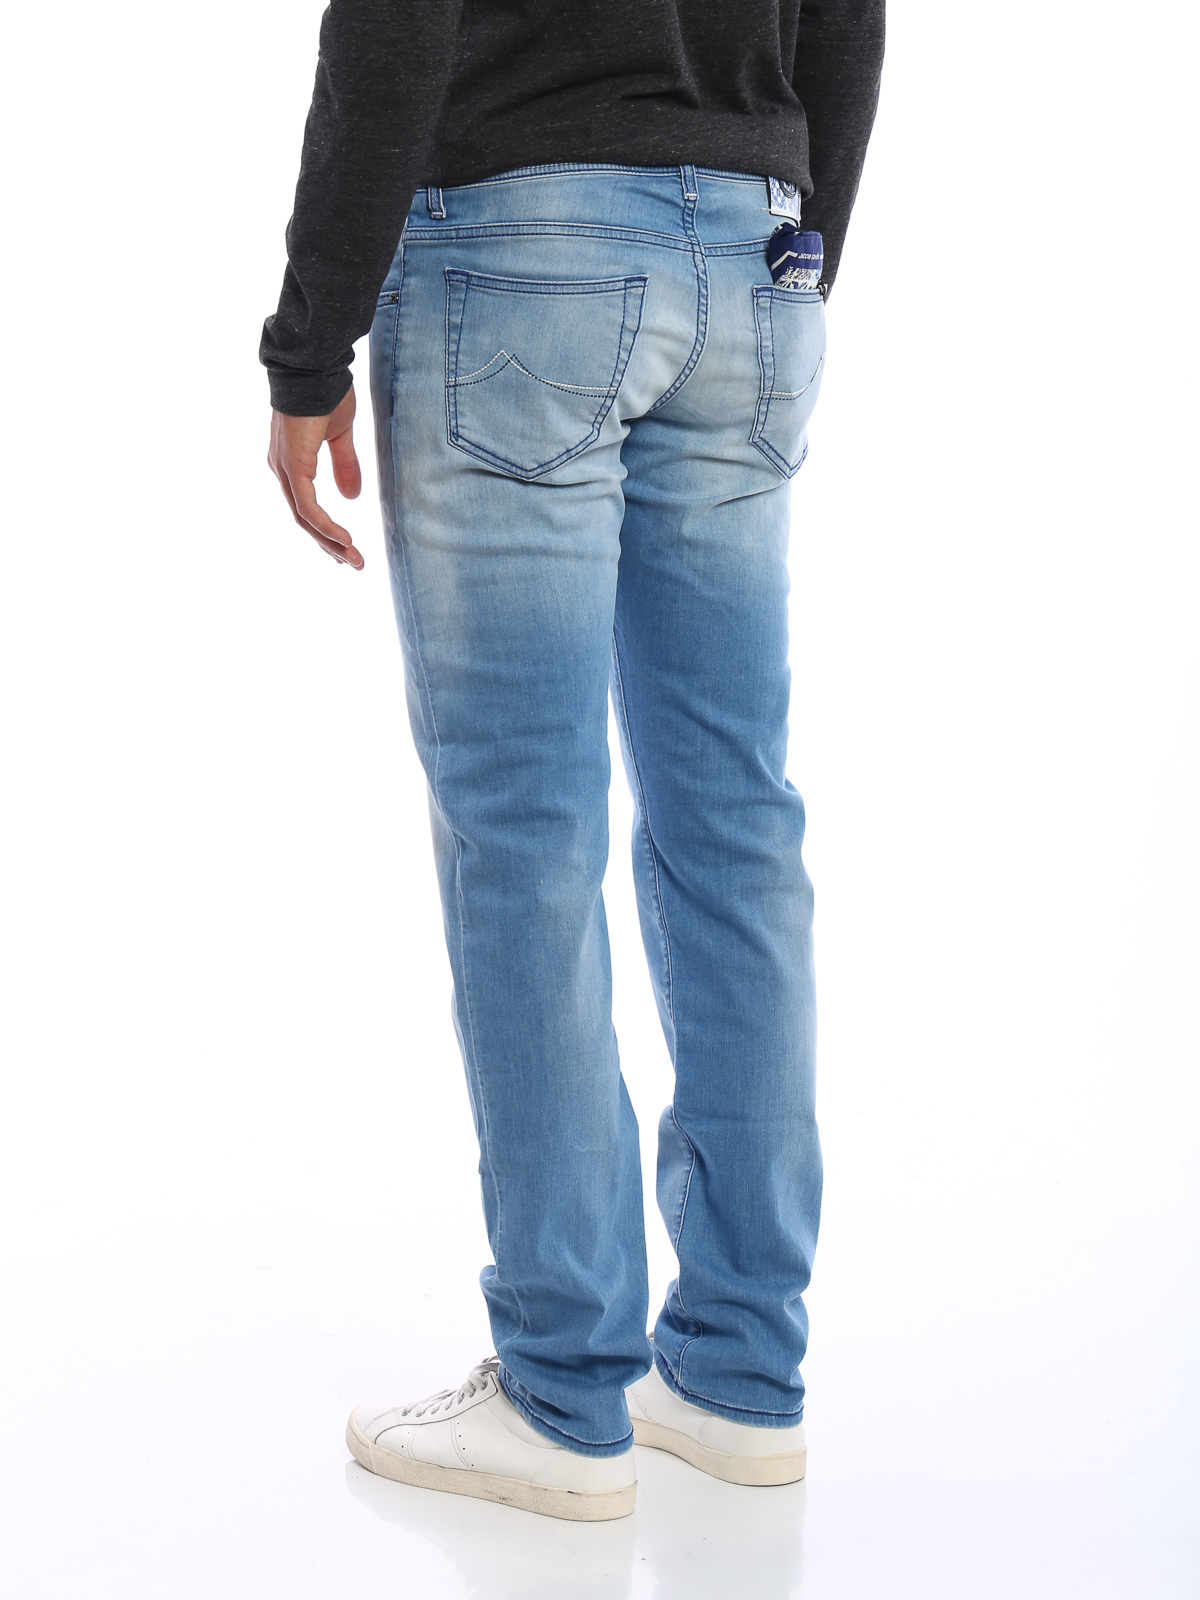 jacob cohen jeans online shop